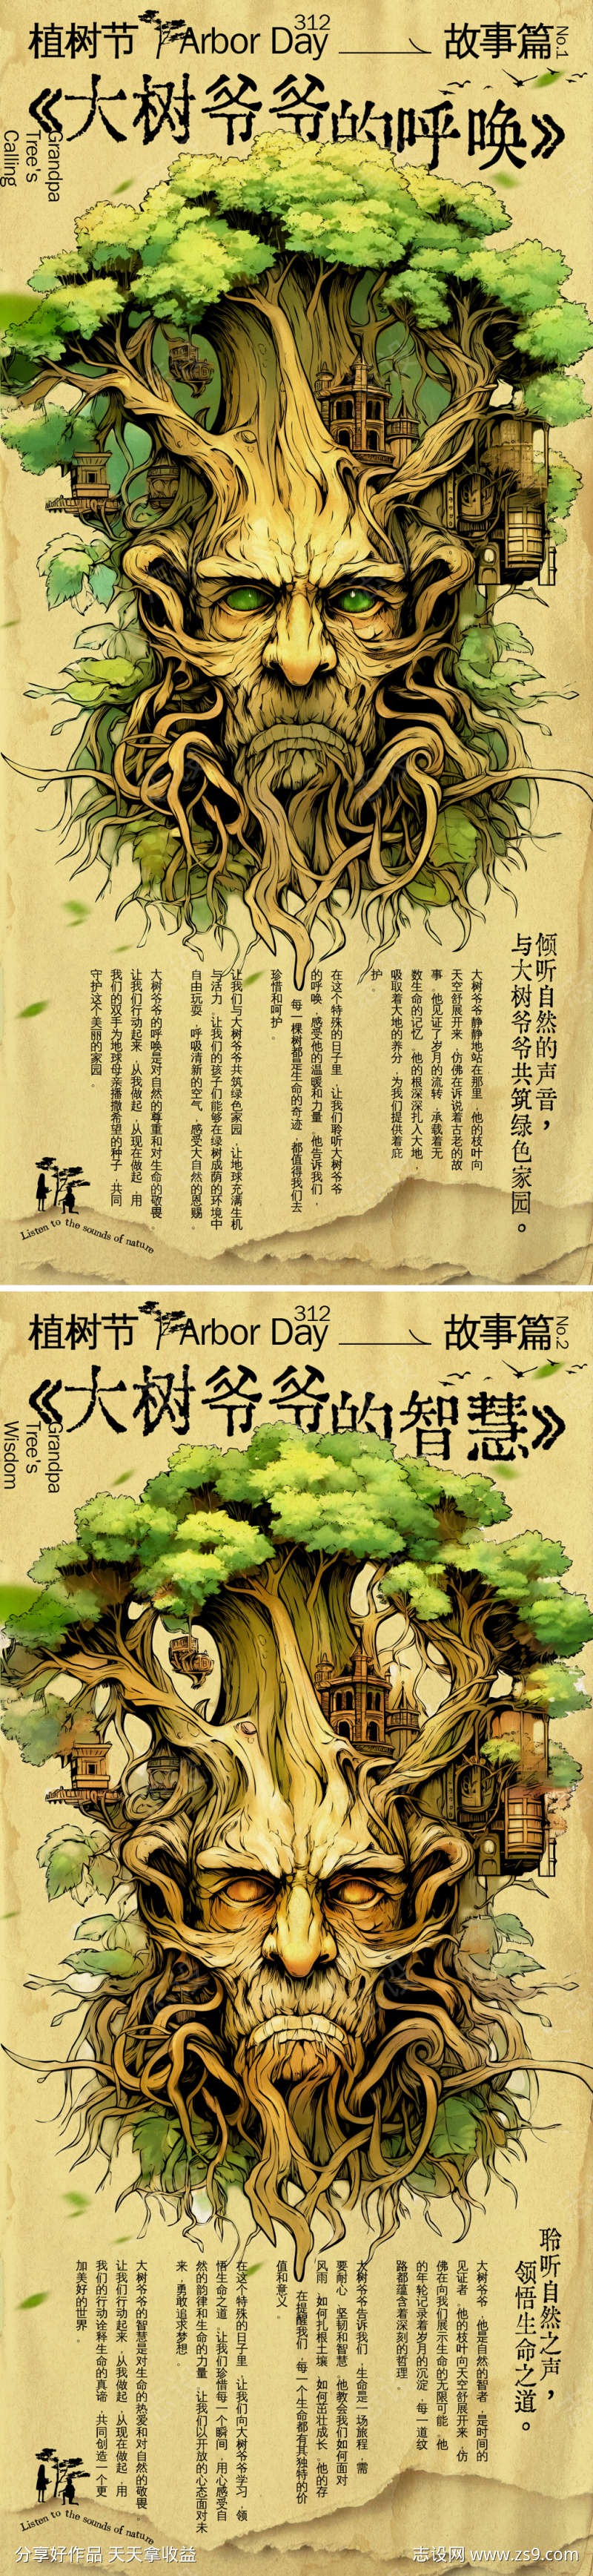 植树节大树爷爷的故事系列海报